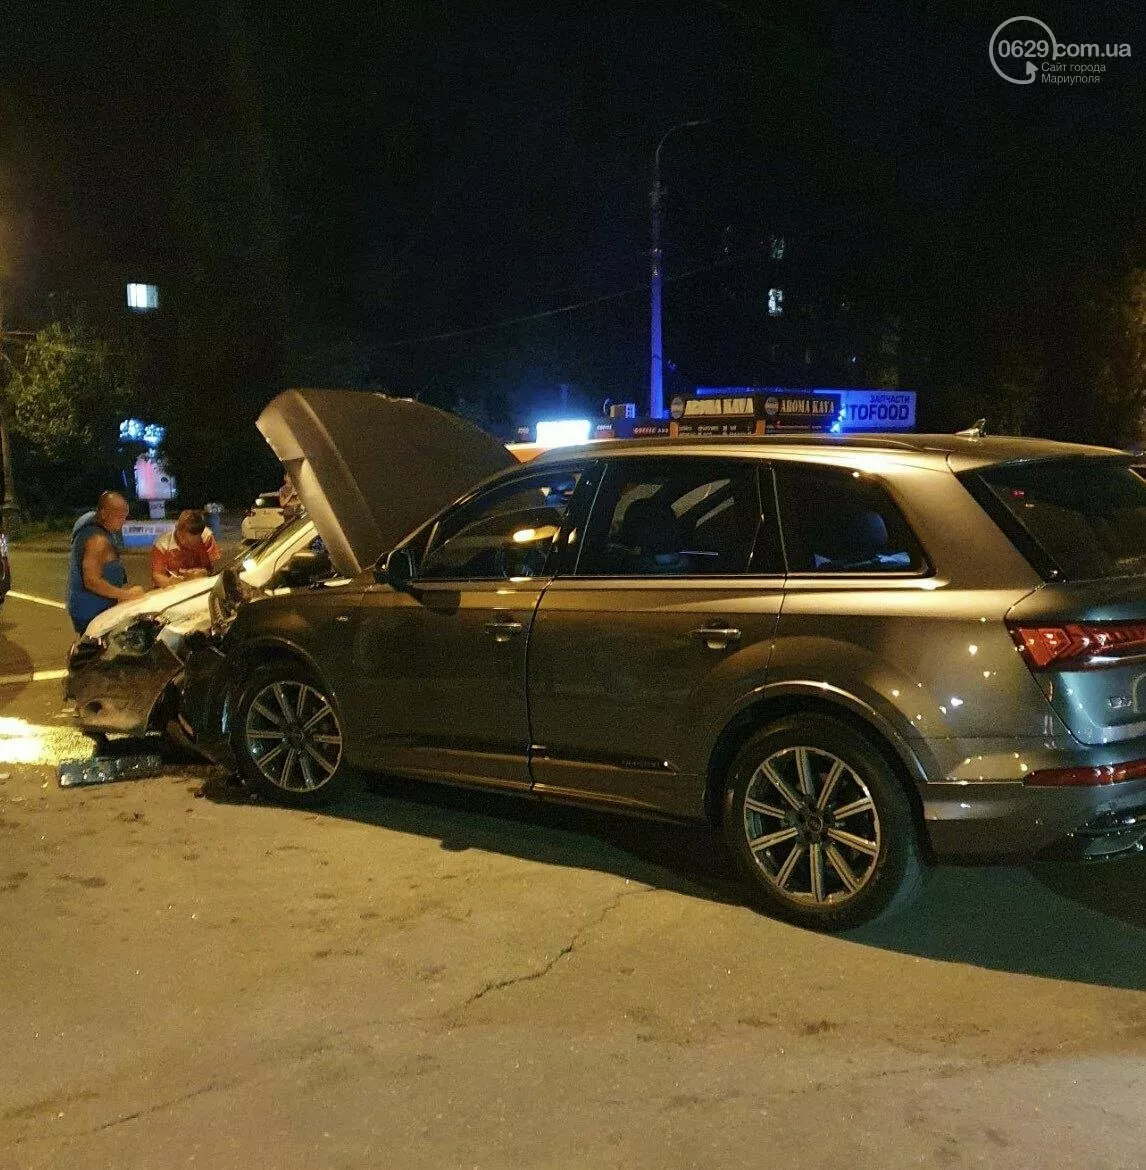 Авария в Мариуполе с авто "Новой почты", фото: 0629